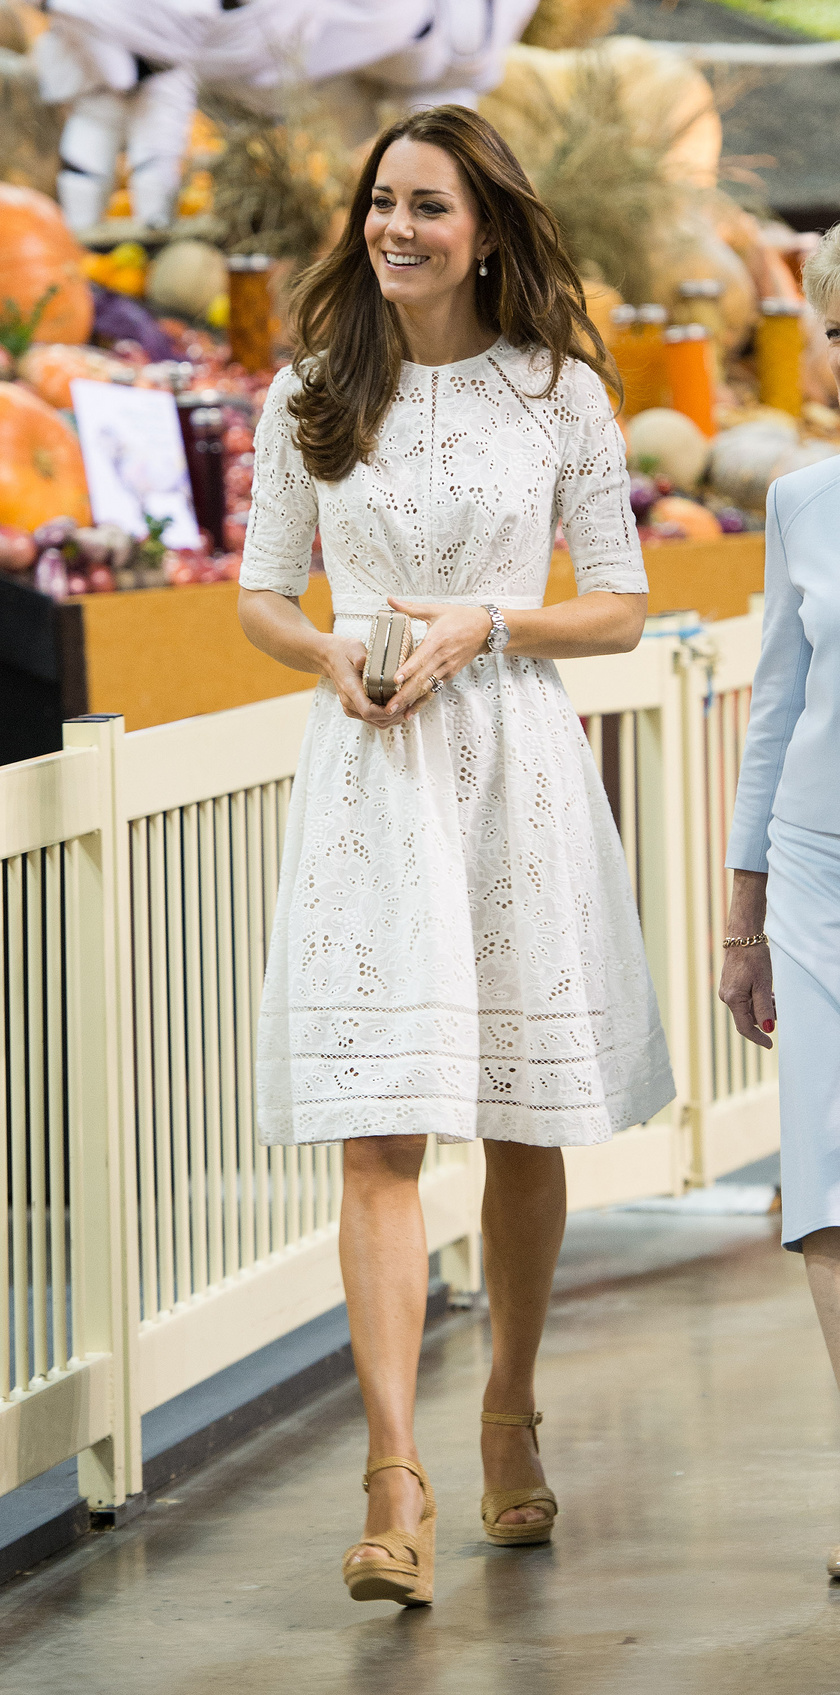 Katalin hercegné 2014 áprilisában Ausztráliában húsvétozott, nagypénteken az ausztrál Zimmermann márka csipkekreációját viselte.